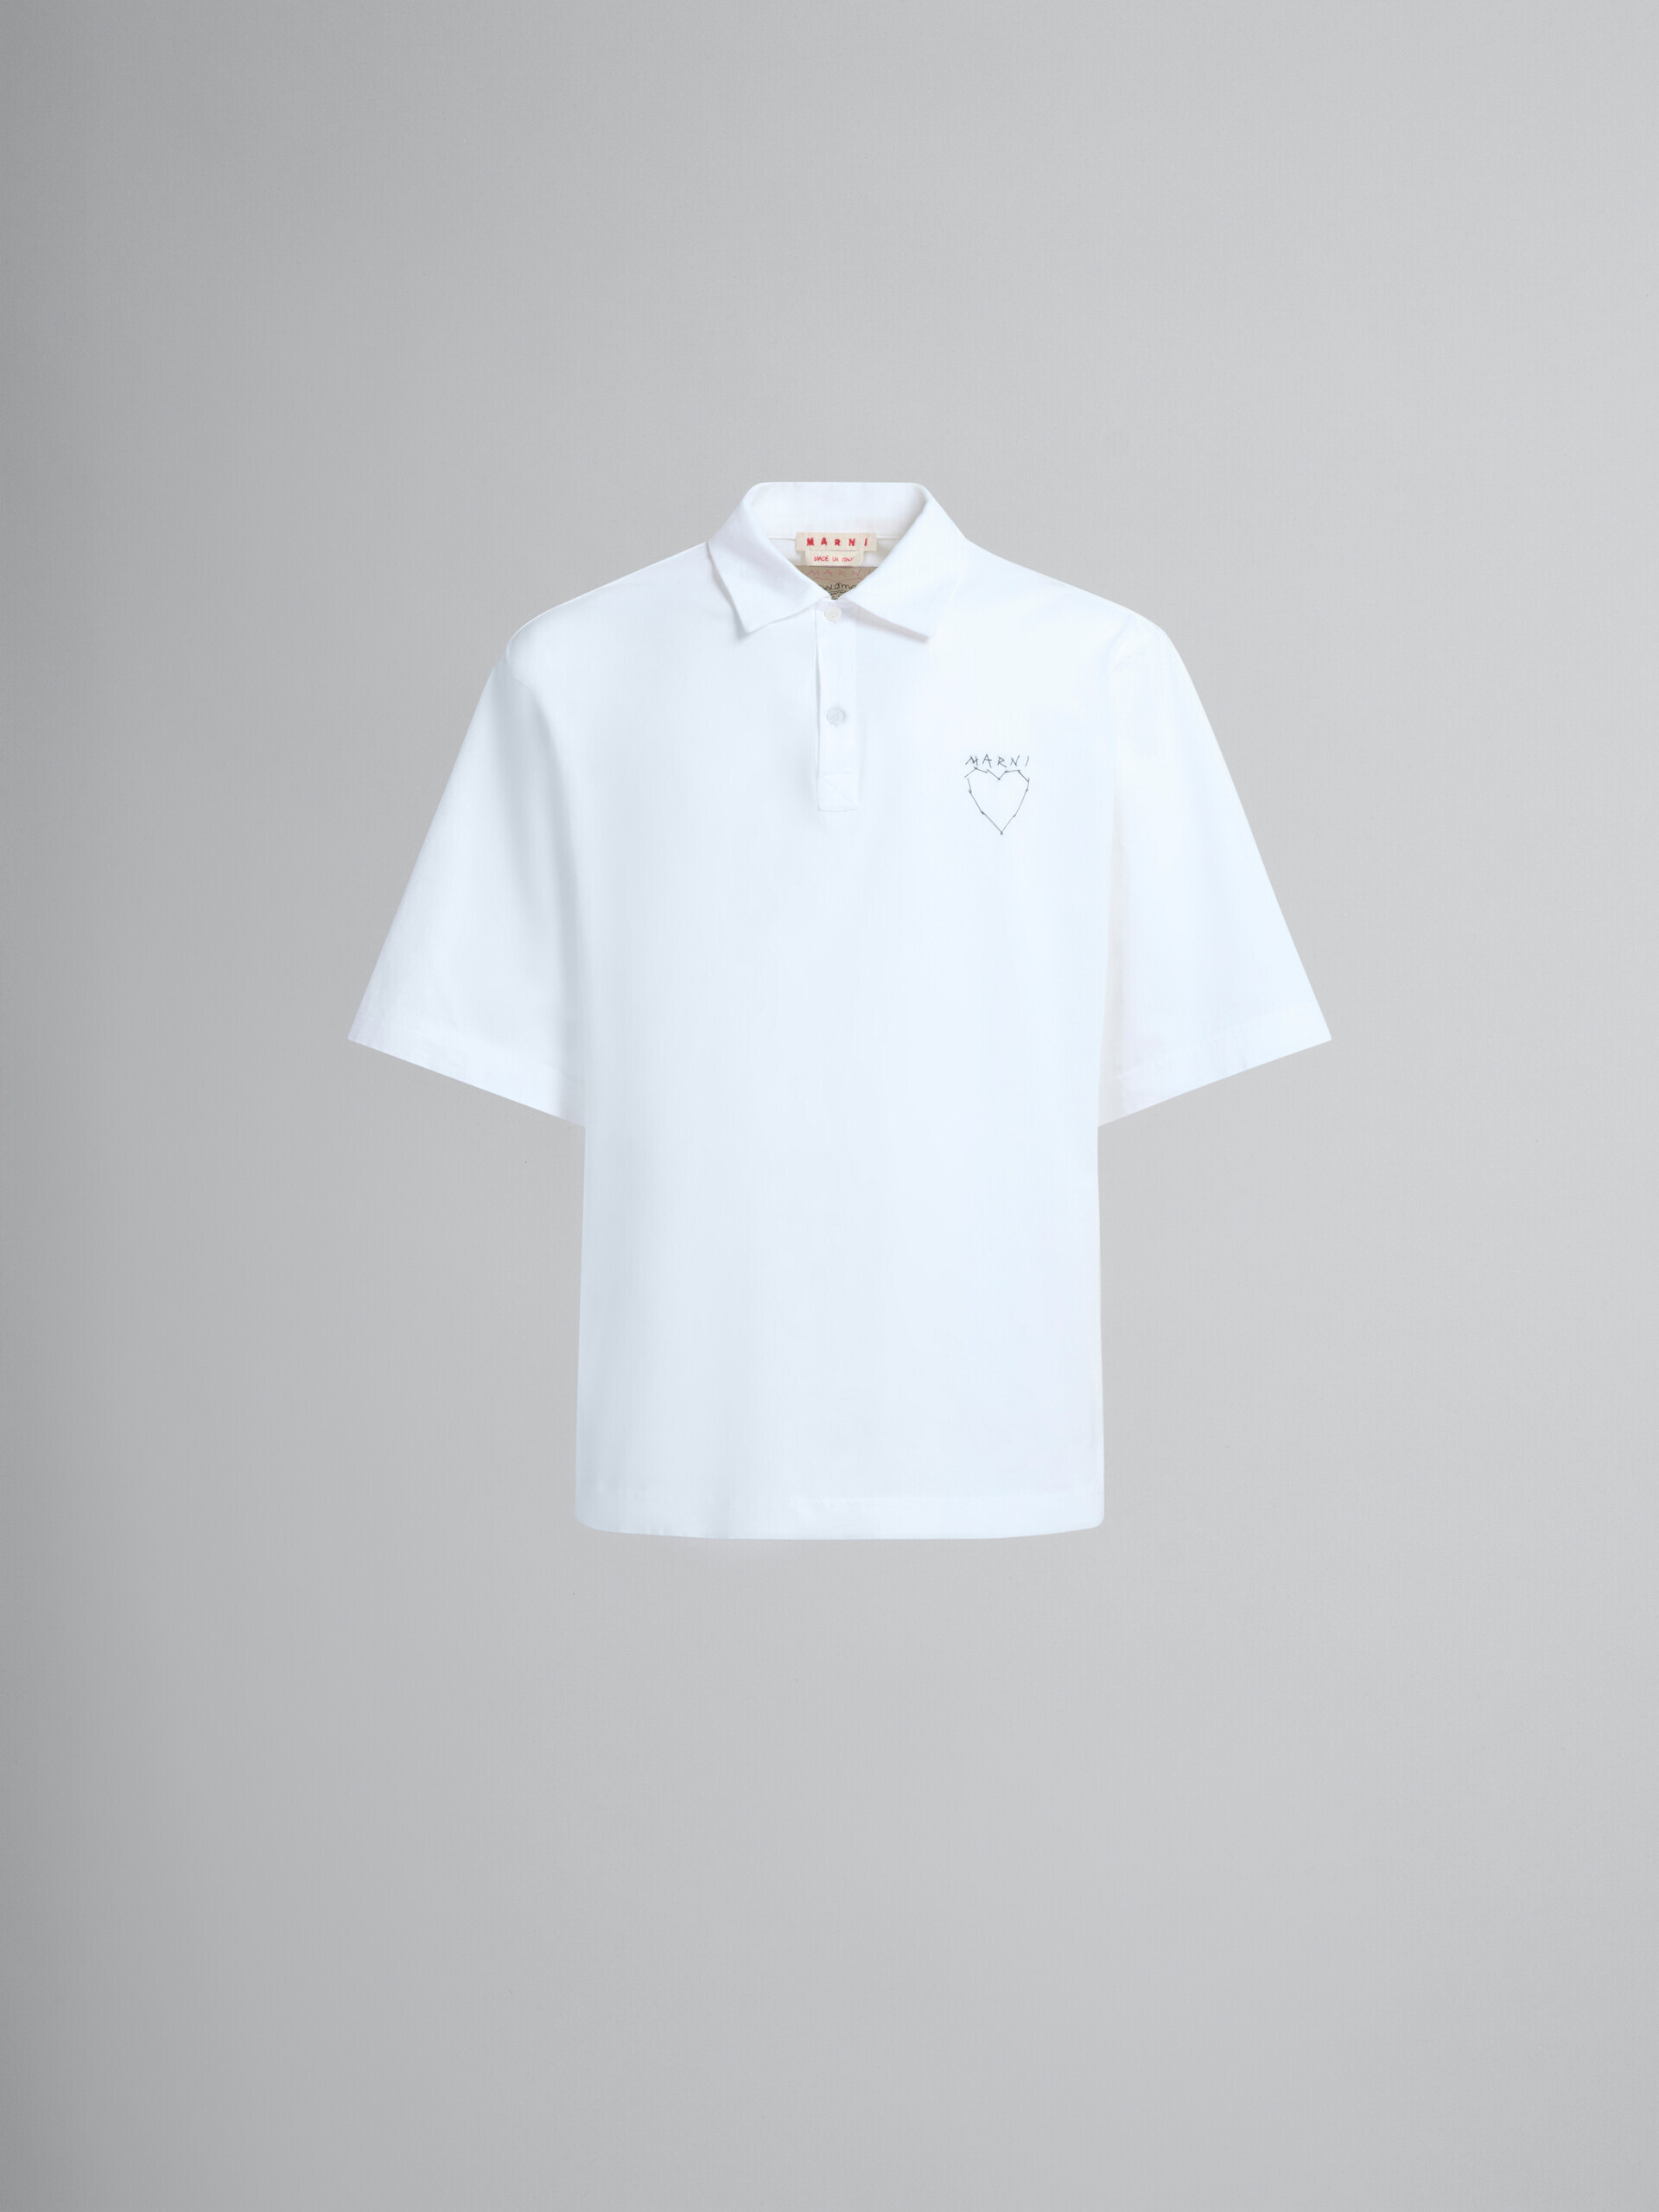 Polo de algodón orgánico blanco con estampado en la espalda - Camisas - Image 2